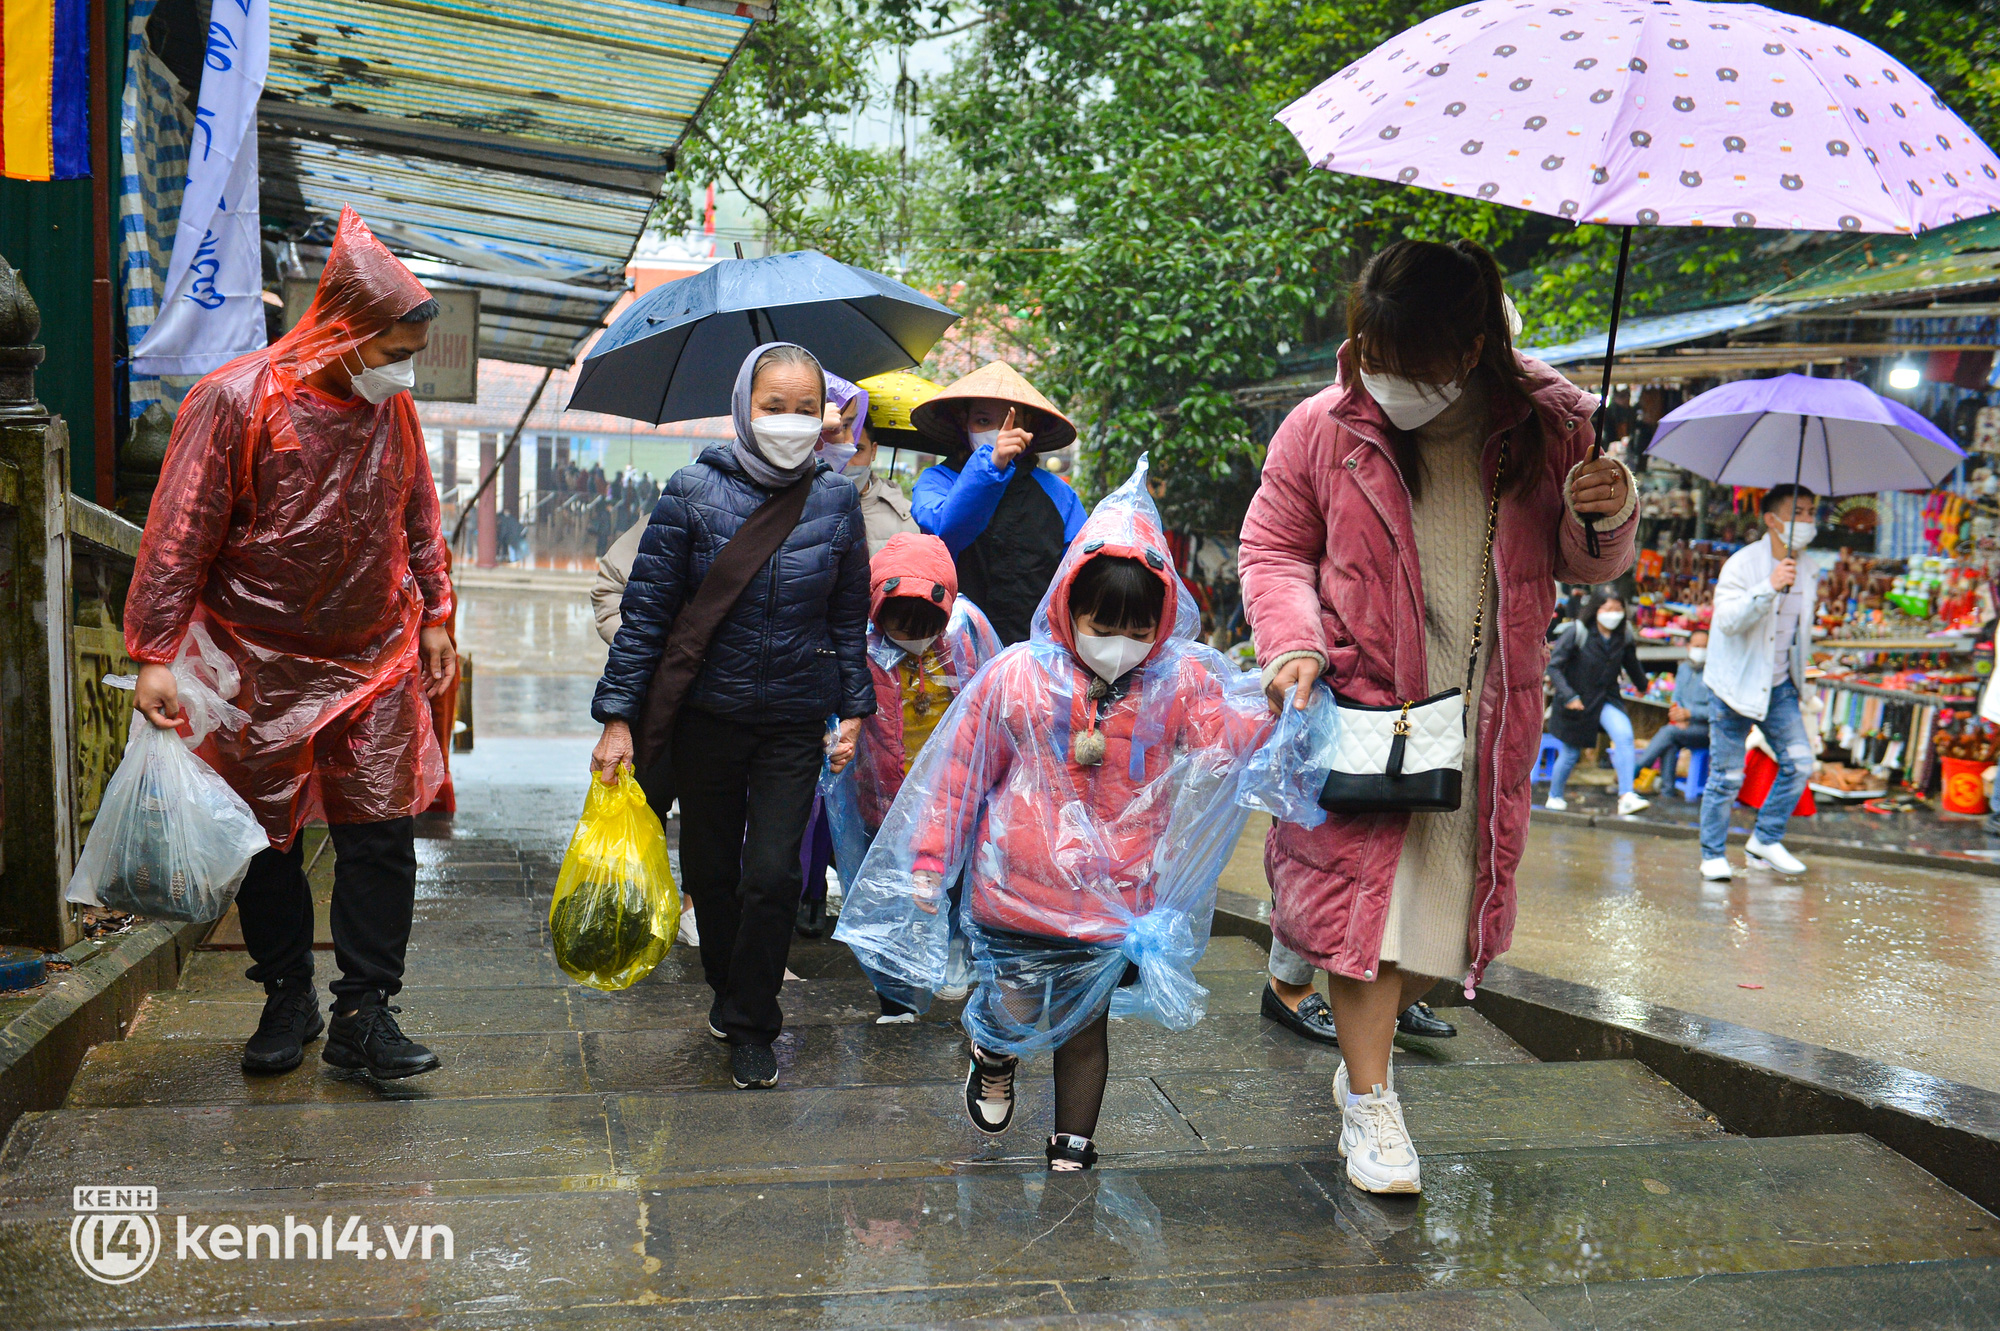 Ảnh: Người dân mặc áo mưa co rúm trên thuyền, trẻ em mệt mỏi theo cha mẹ đi lễ chùa Hương trong giá rét - Ảnh 8.